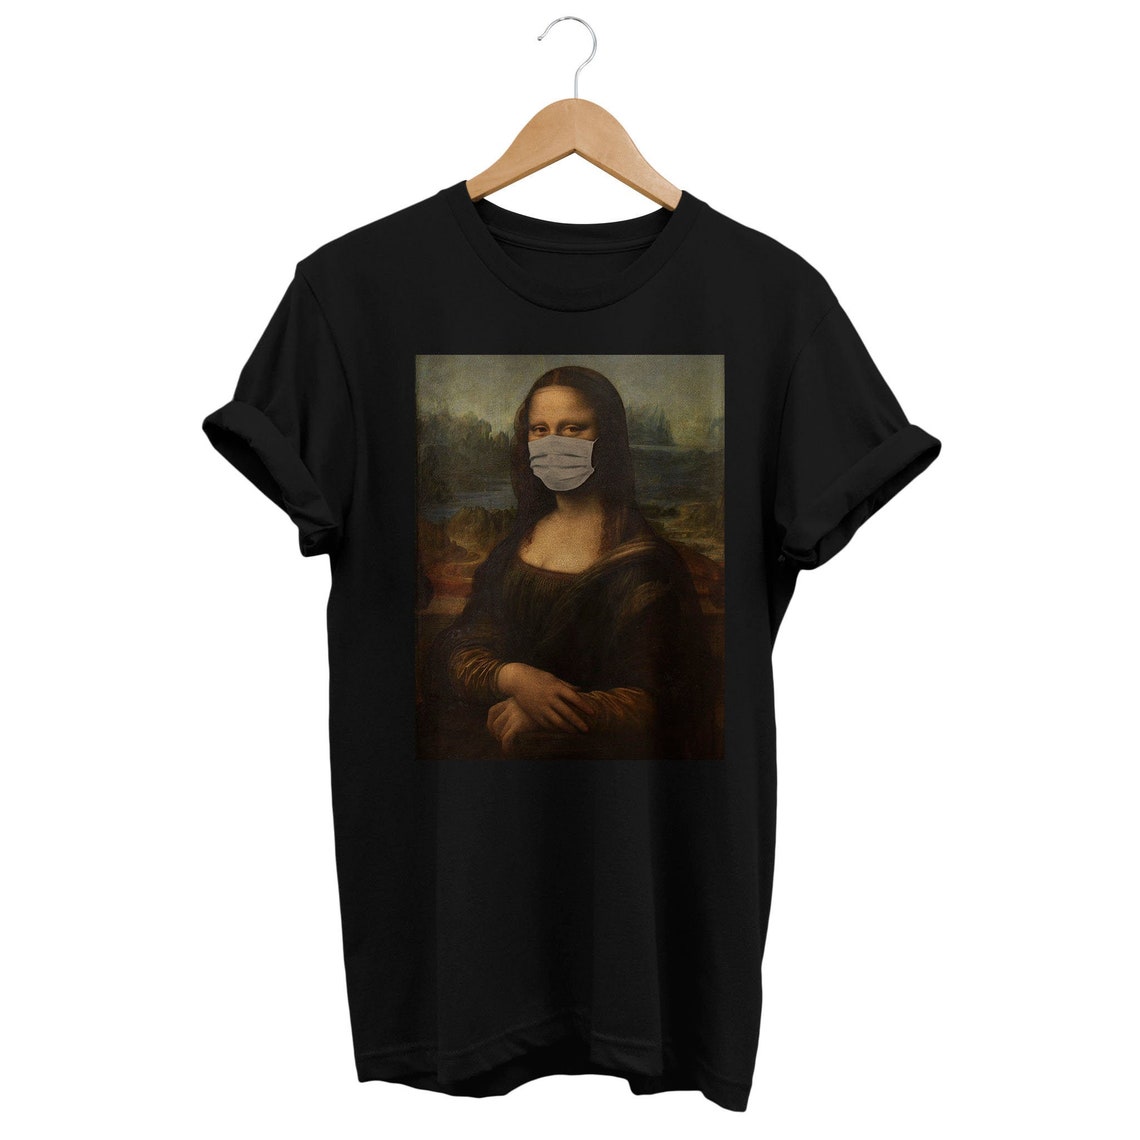 Funny Mona Lisa Shirt Aesthetic T-shirt Monalisa Tee Social | Etsy